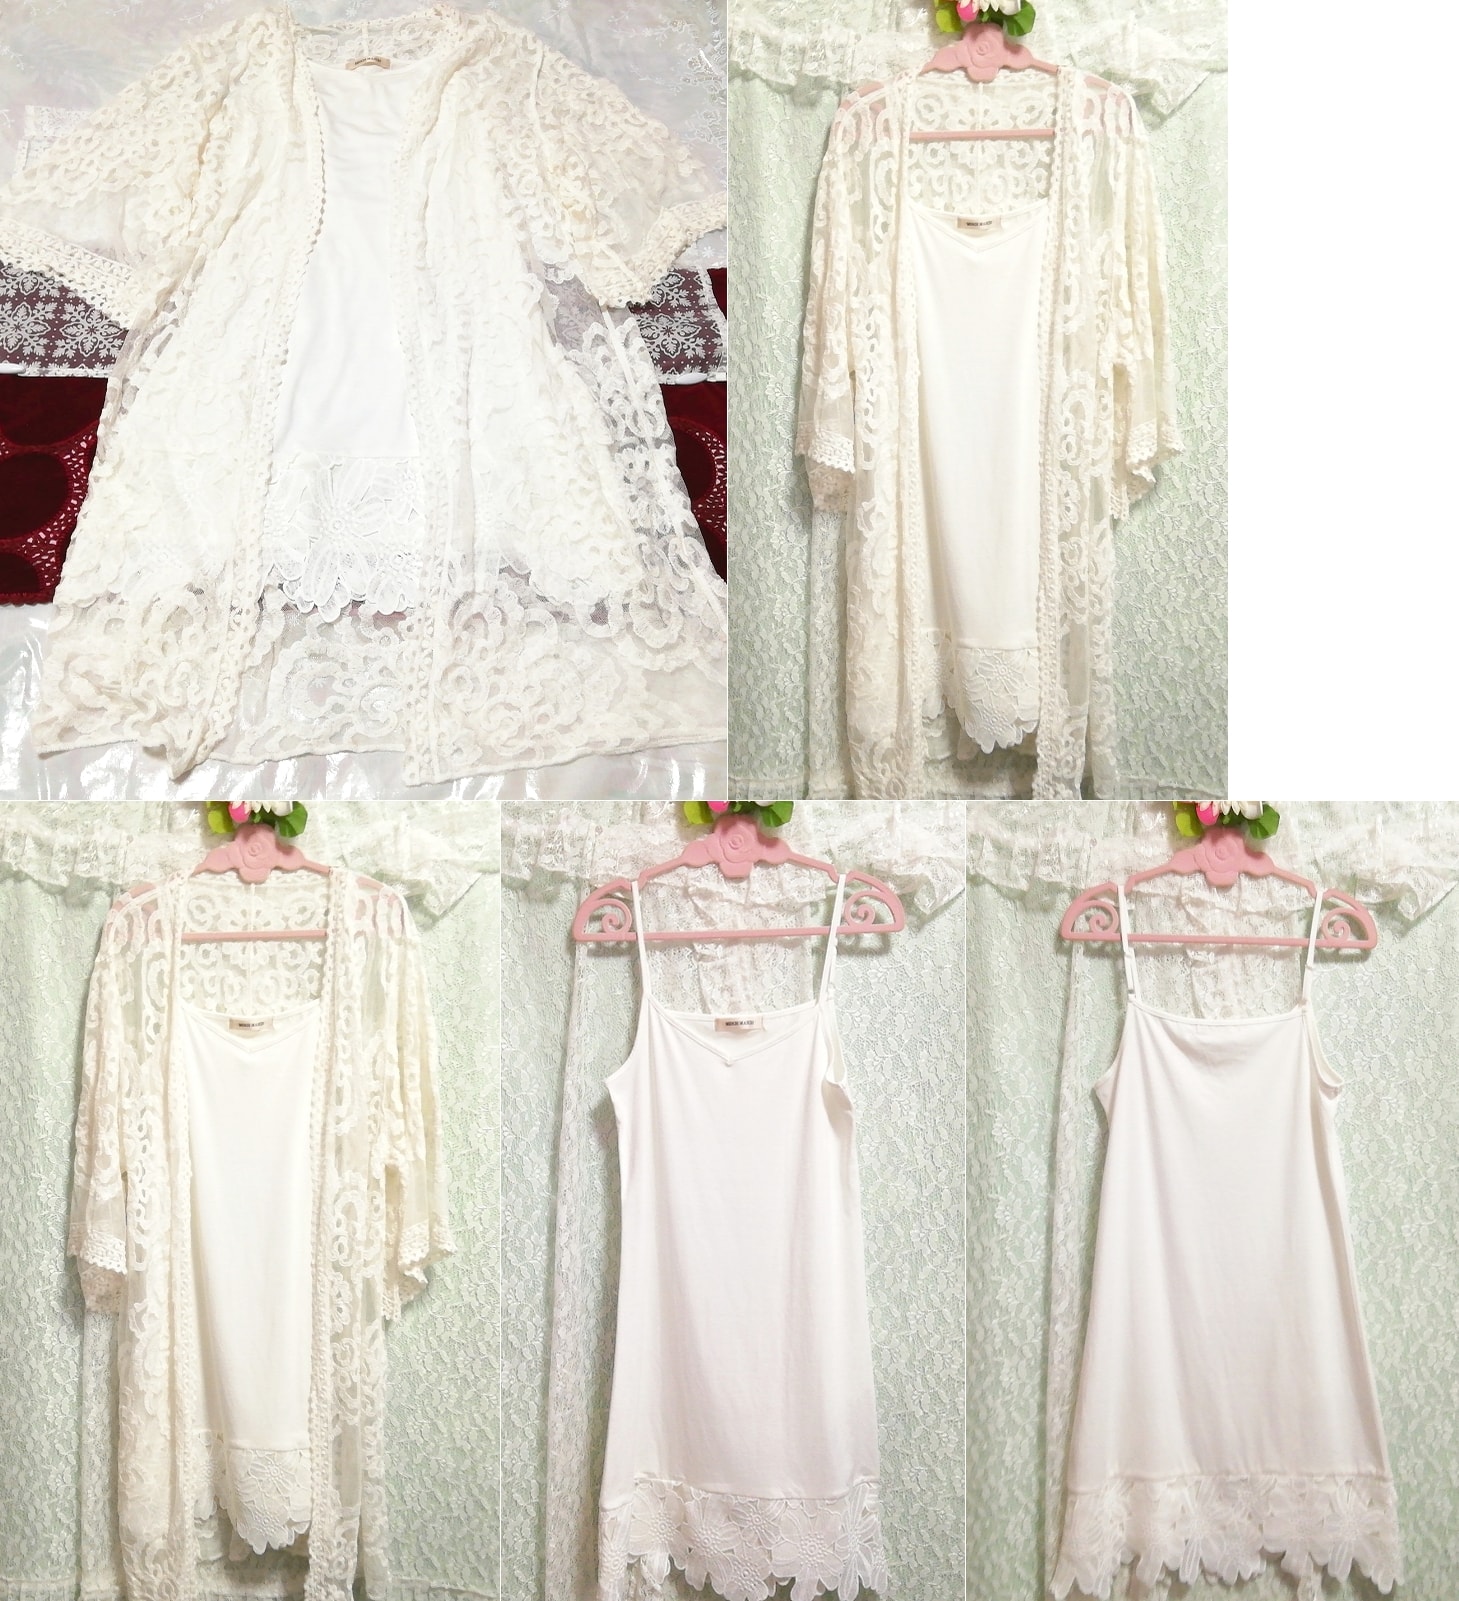 白色蕾丝罩衫睡衣吊带背心娃娃装连衣裙 2 件, 时尚, 女士时装, 睡衣